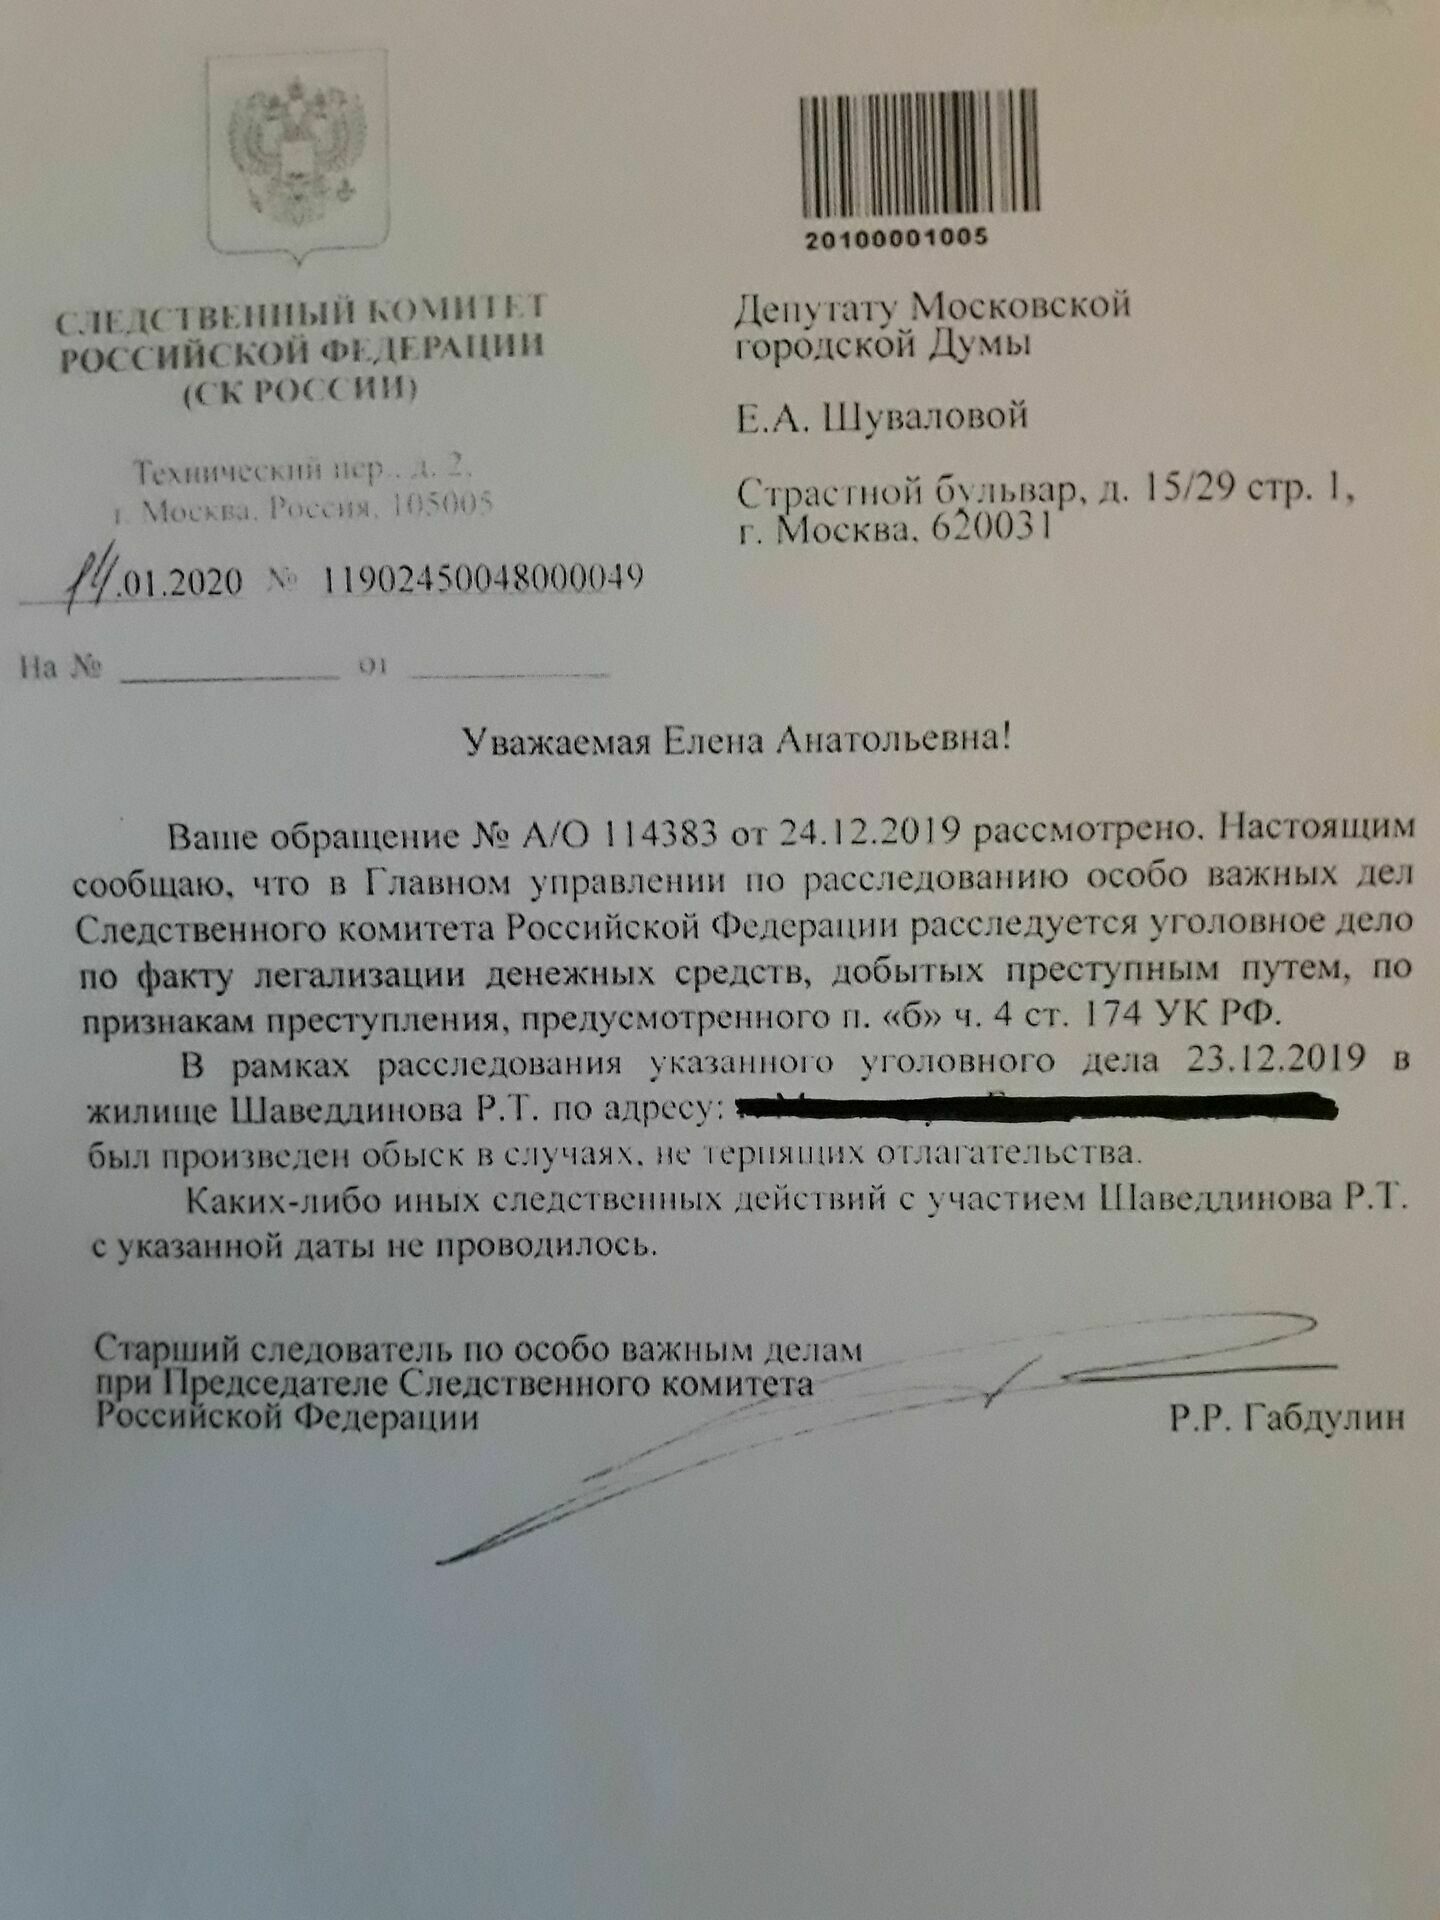 В официальном ответет СК РФ говорится  об "экстренных обстоятельствах", которые привели к обыску в квартире Руслана Шаведдинова.